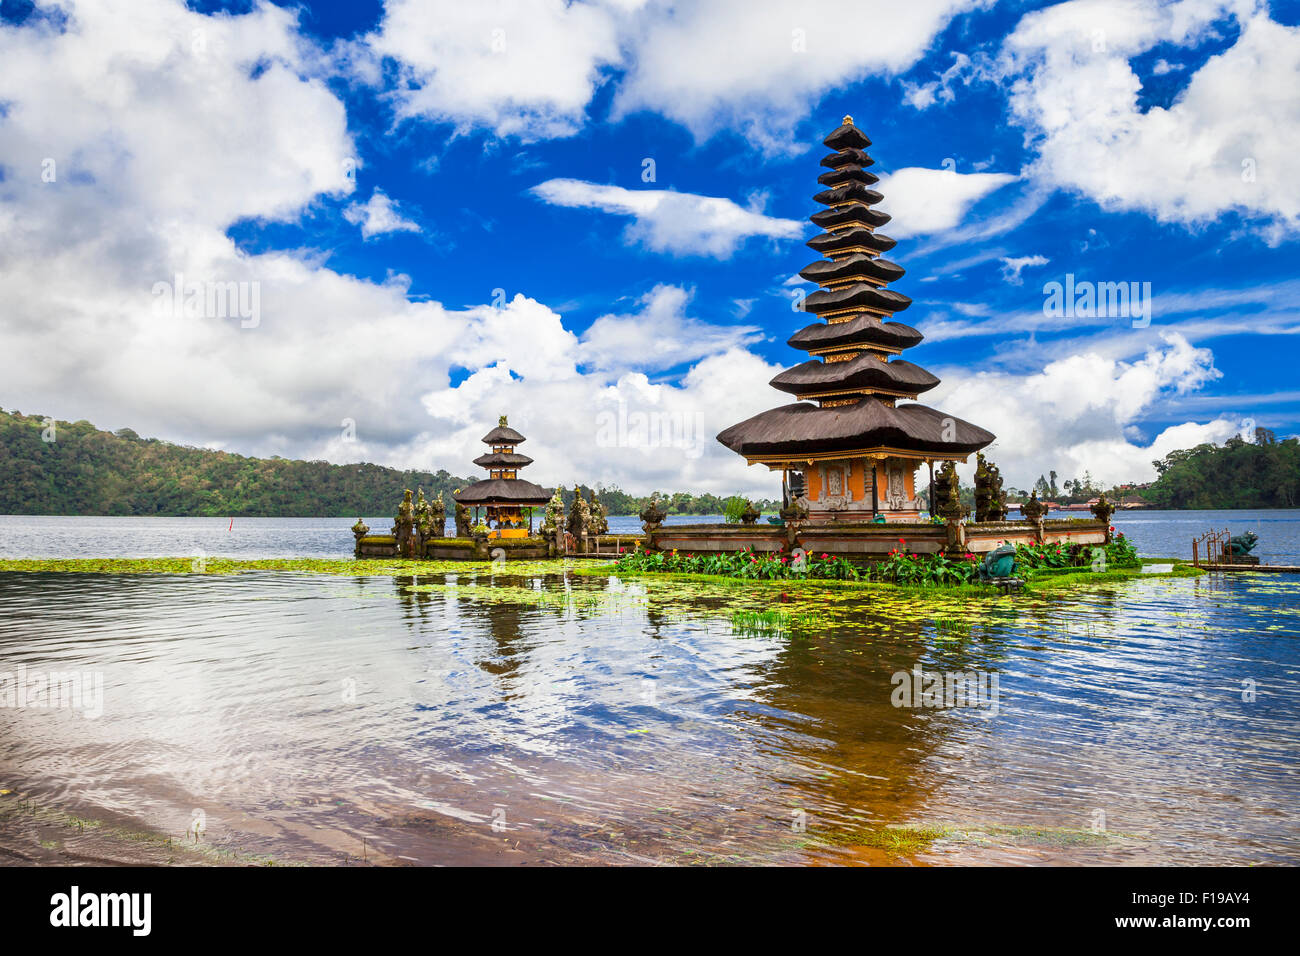 mysterious temples of Bali island - famous Ulun Danu in Bratan lake Stock Photo